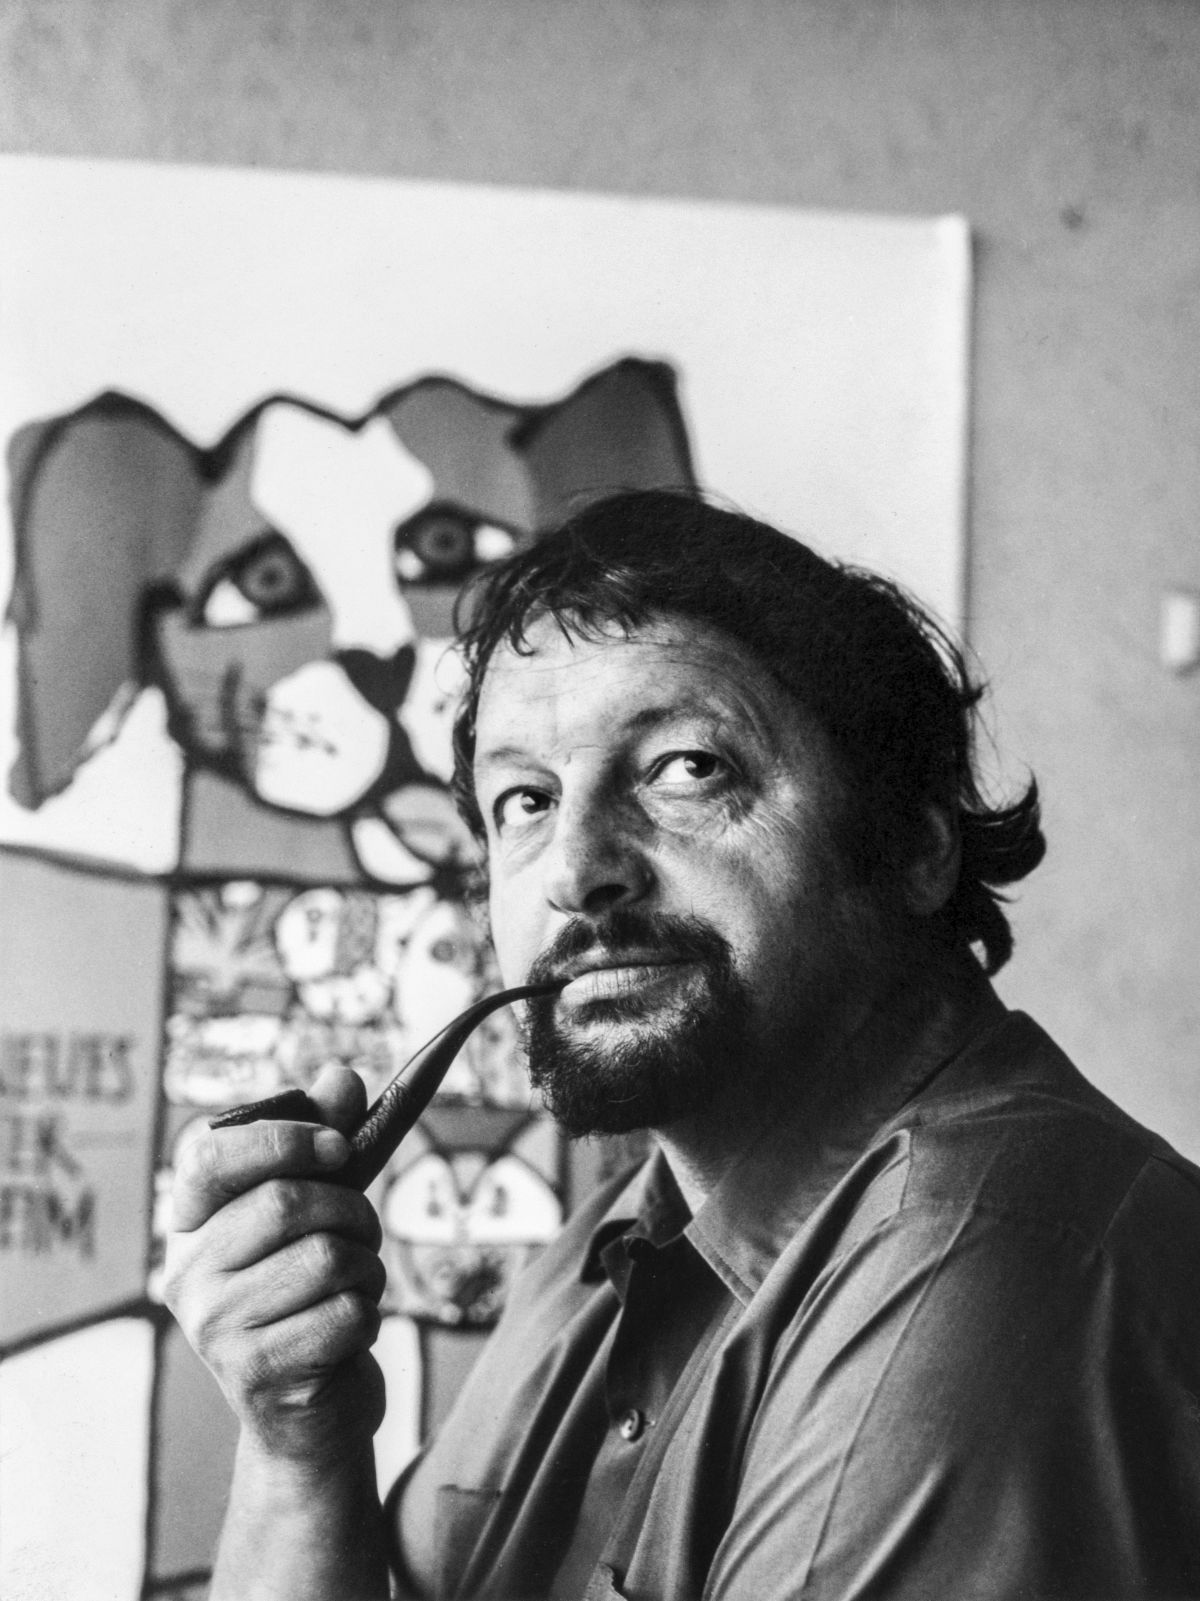 Celestino Piatti in seinem Basler Atelier, 1972 (Foto: KEYSTONE/ Archiv Celestino Piatti / Ursula Piatti)